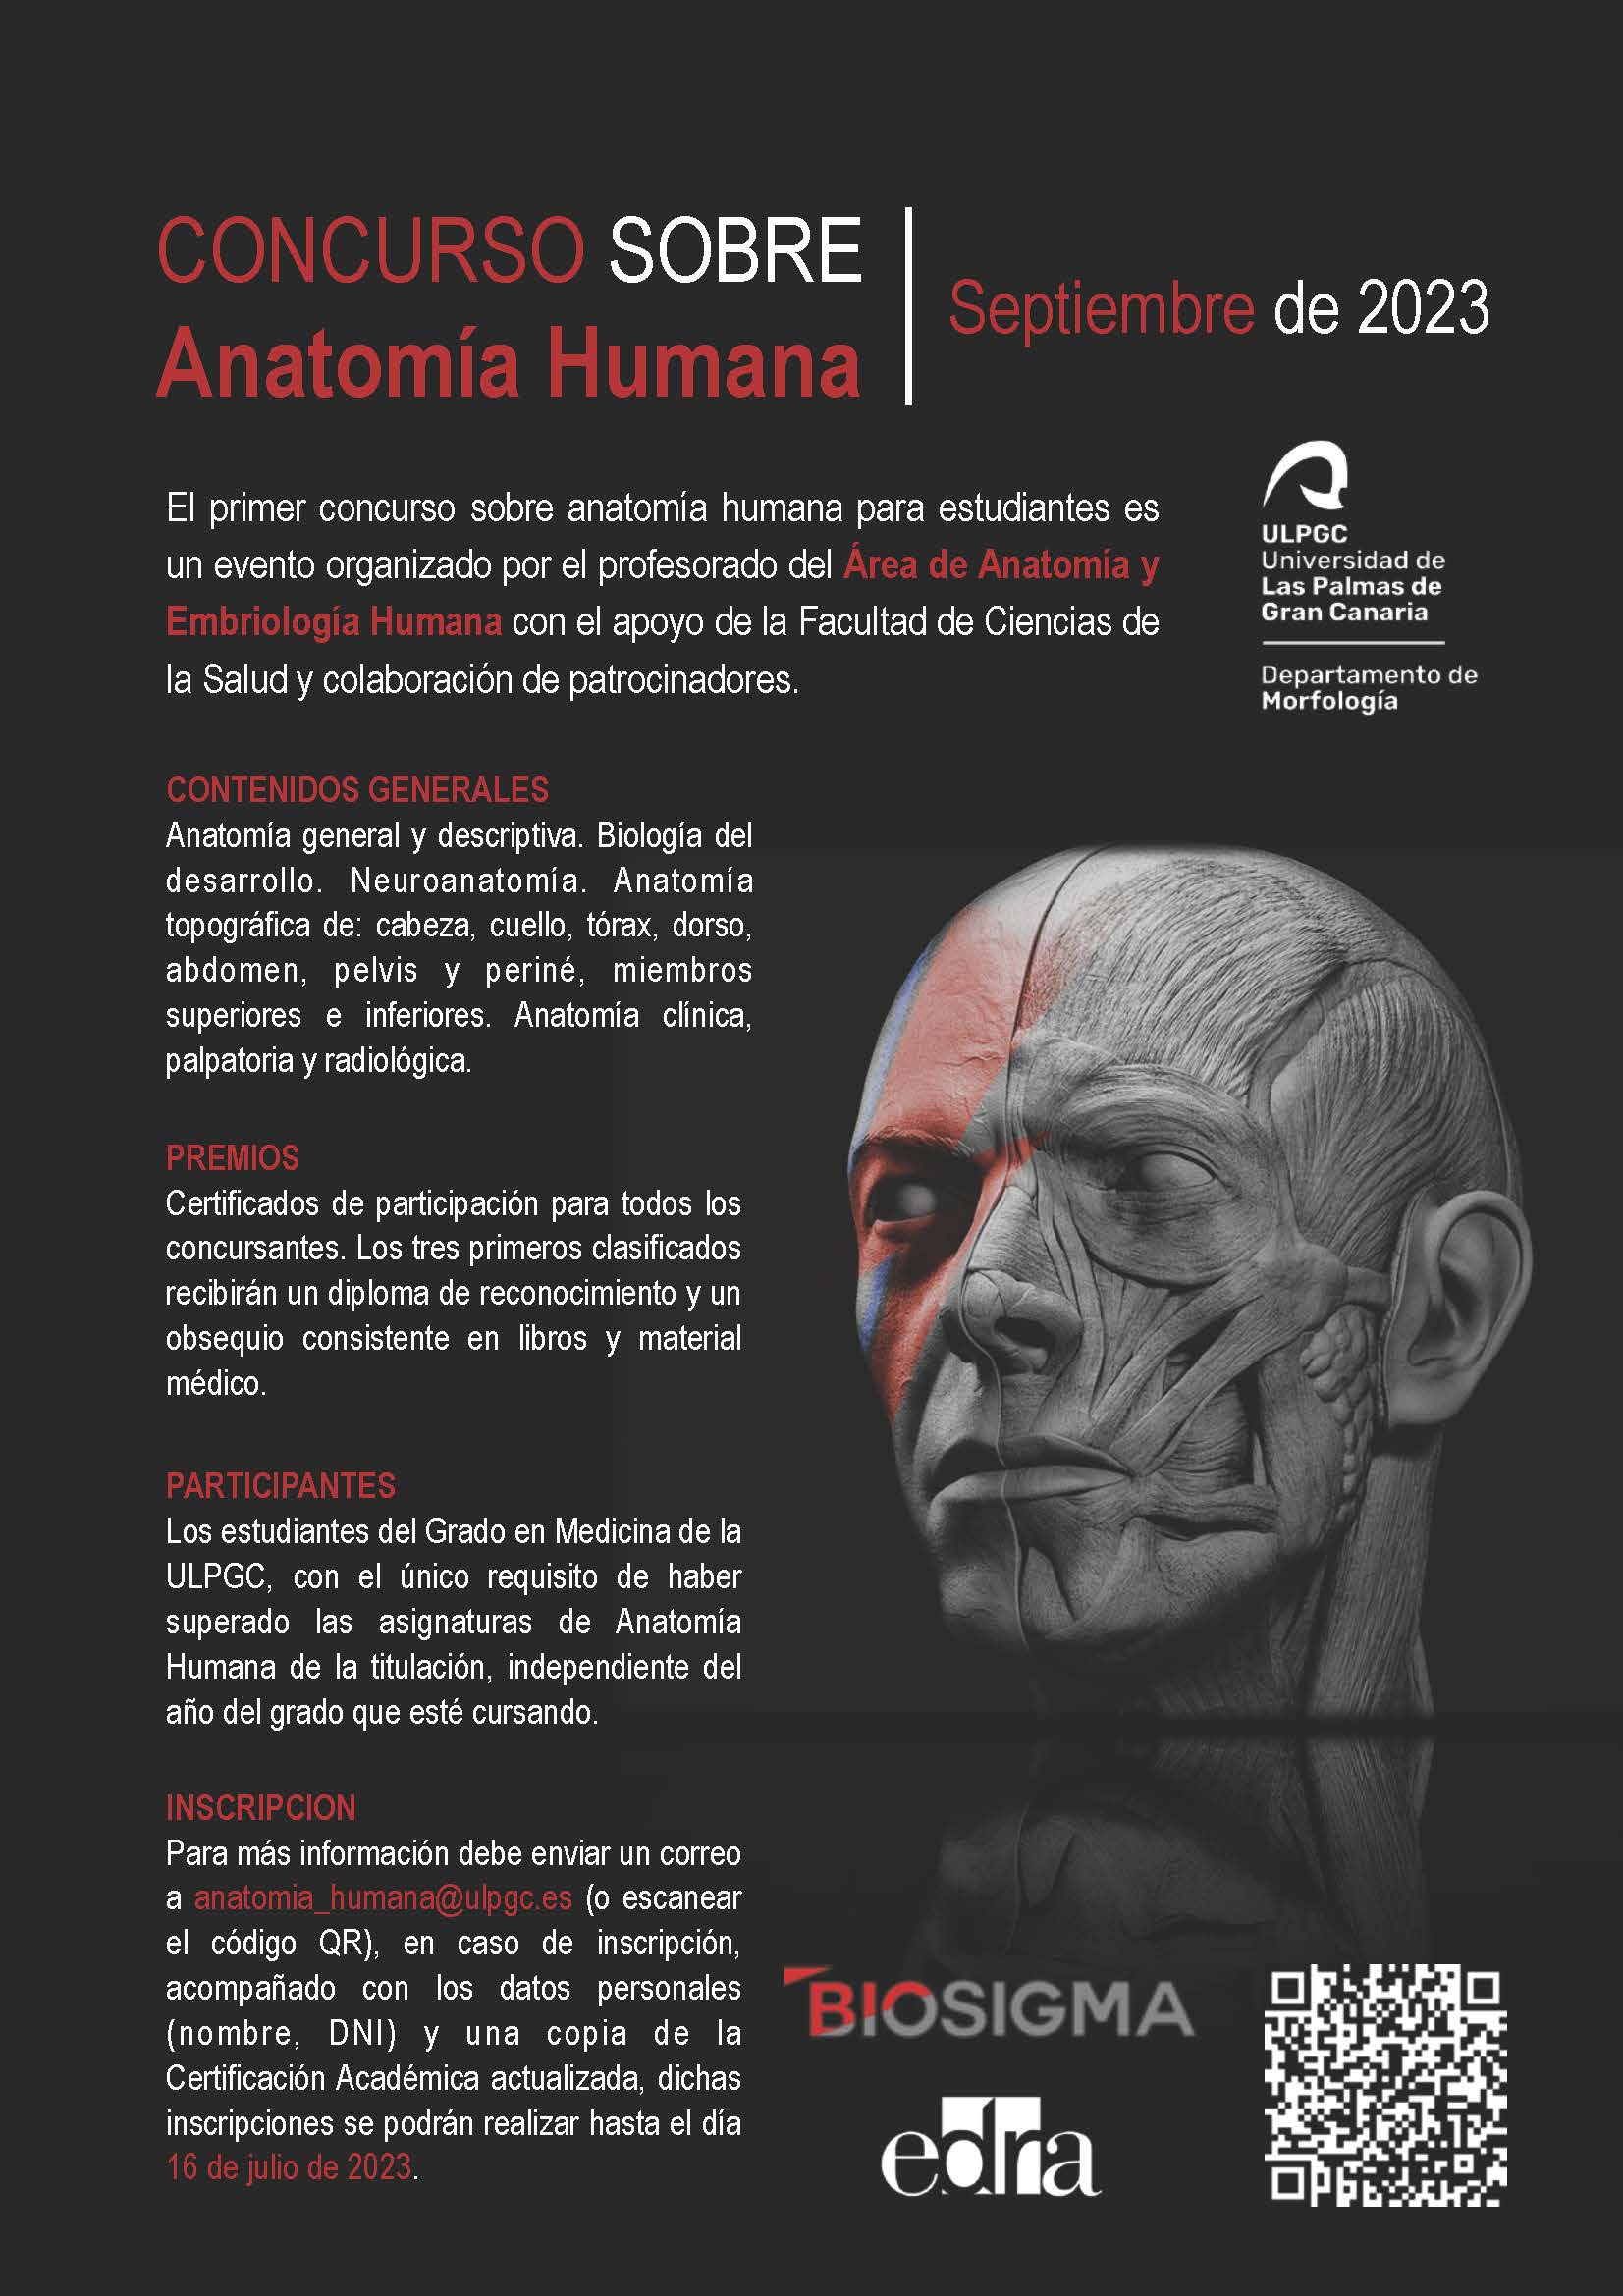 Concurso sobre Anatomía Humana